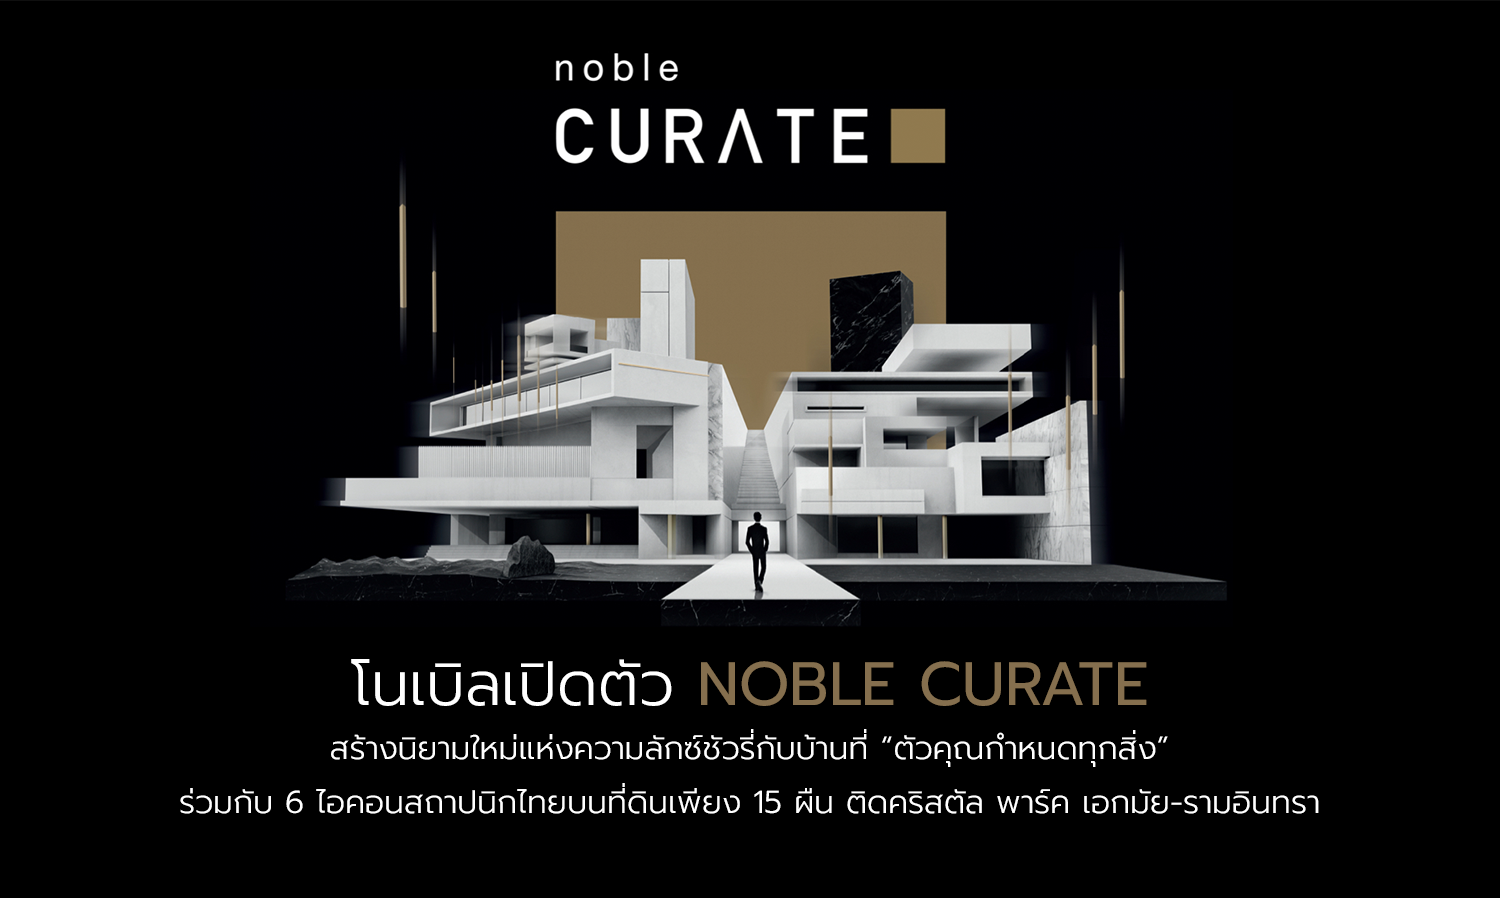 โนเบิลเปิดตัว Noble Curate สร้างนิยามใหม่แห่งความลักซ์ชัวรี่กับบ้านที่ “ตัวคุณกำหนดทุกสิ่ง” ร่วมกับ 6 ไอคอนสถาปนิกไทยบนที่ดินเพียง 15 ผืน ติดคริสตัล พาร์ค เอกมัย-รามอินทรา